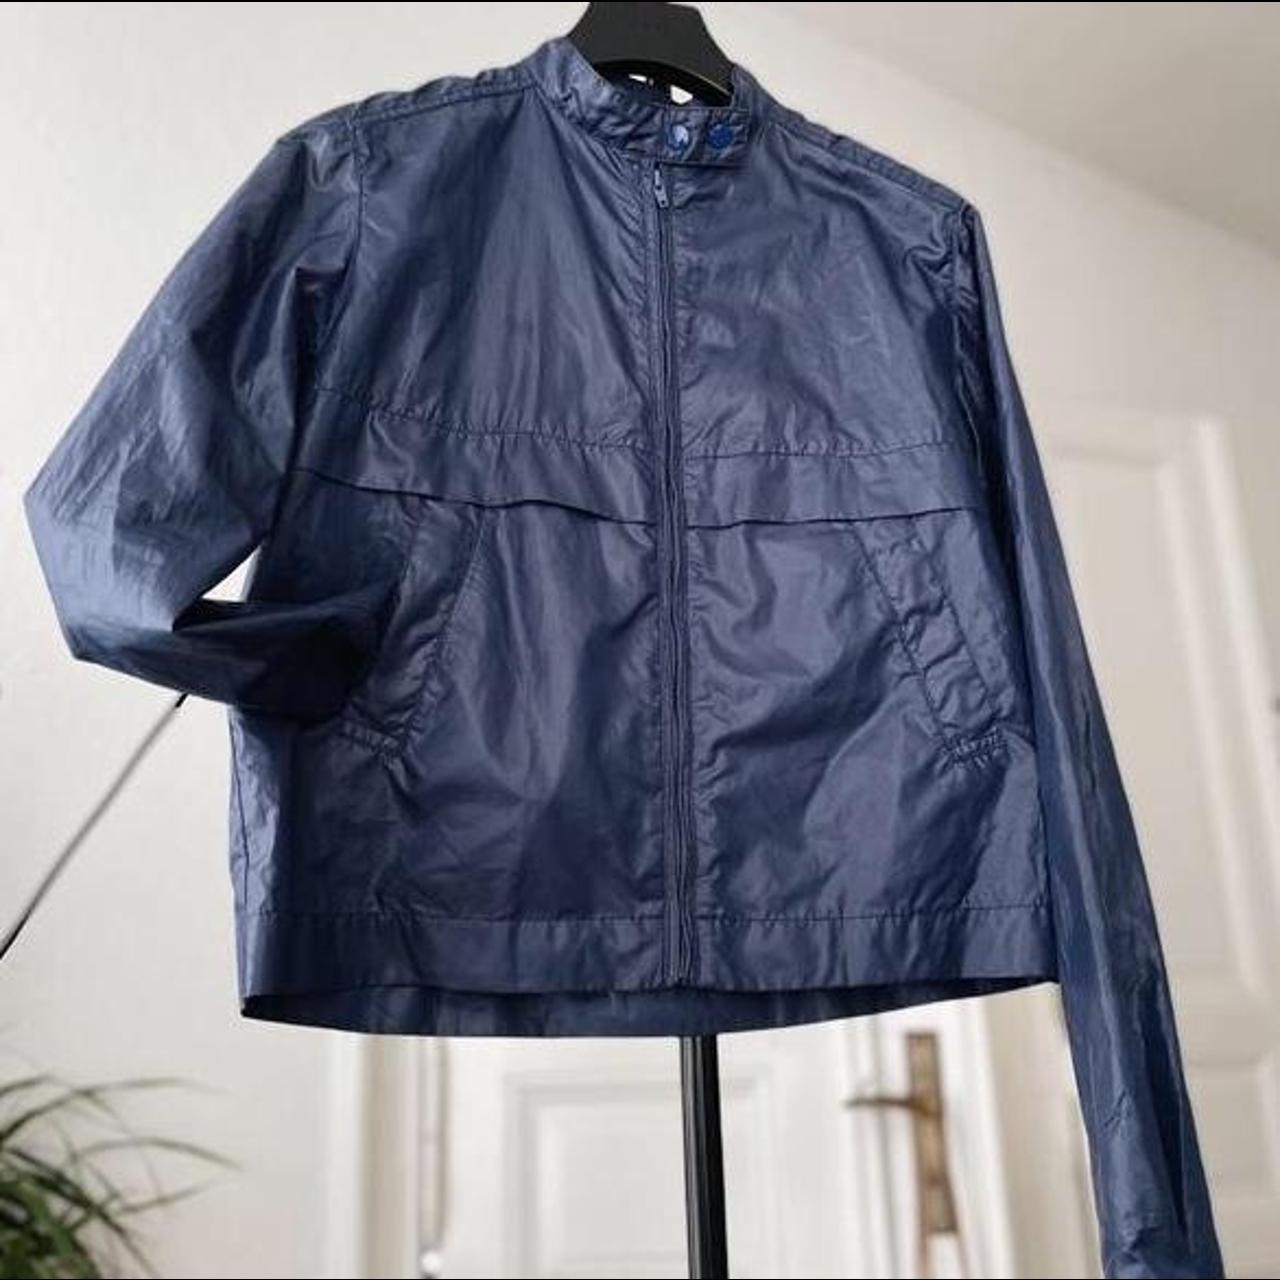 Sportswear uniqlo waterproof rain jacket with stand... - Depop